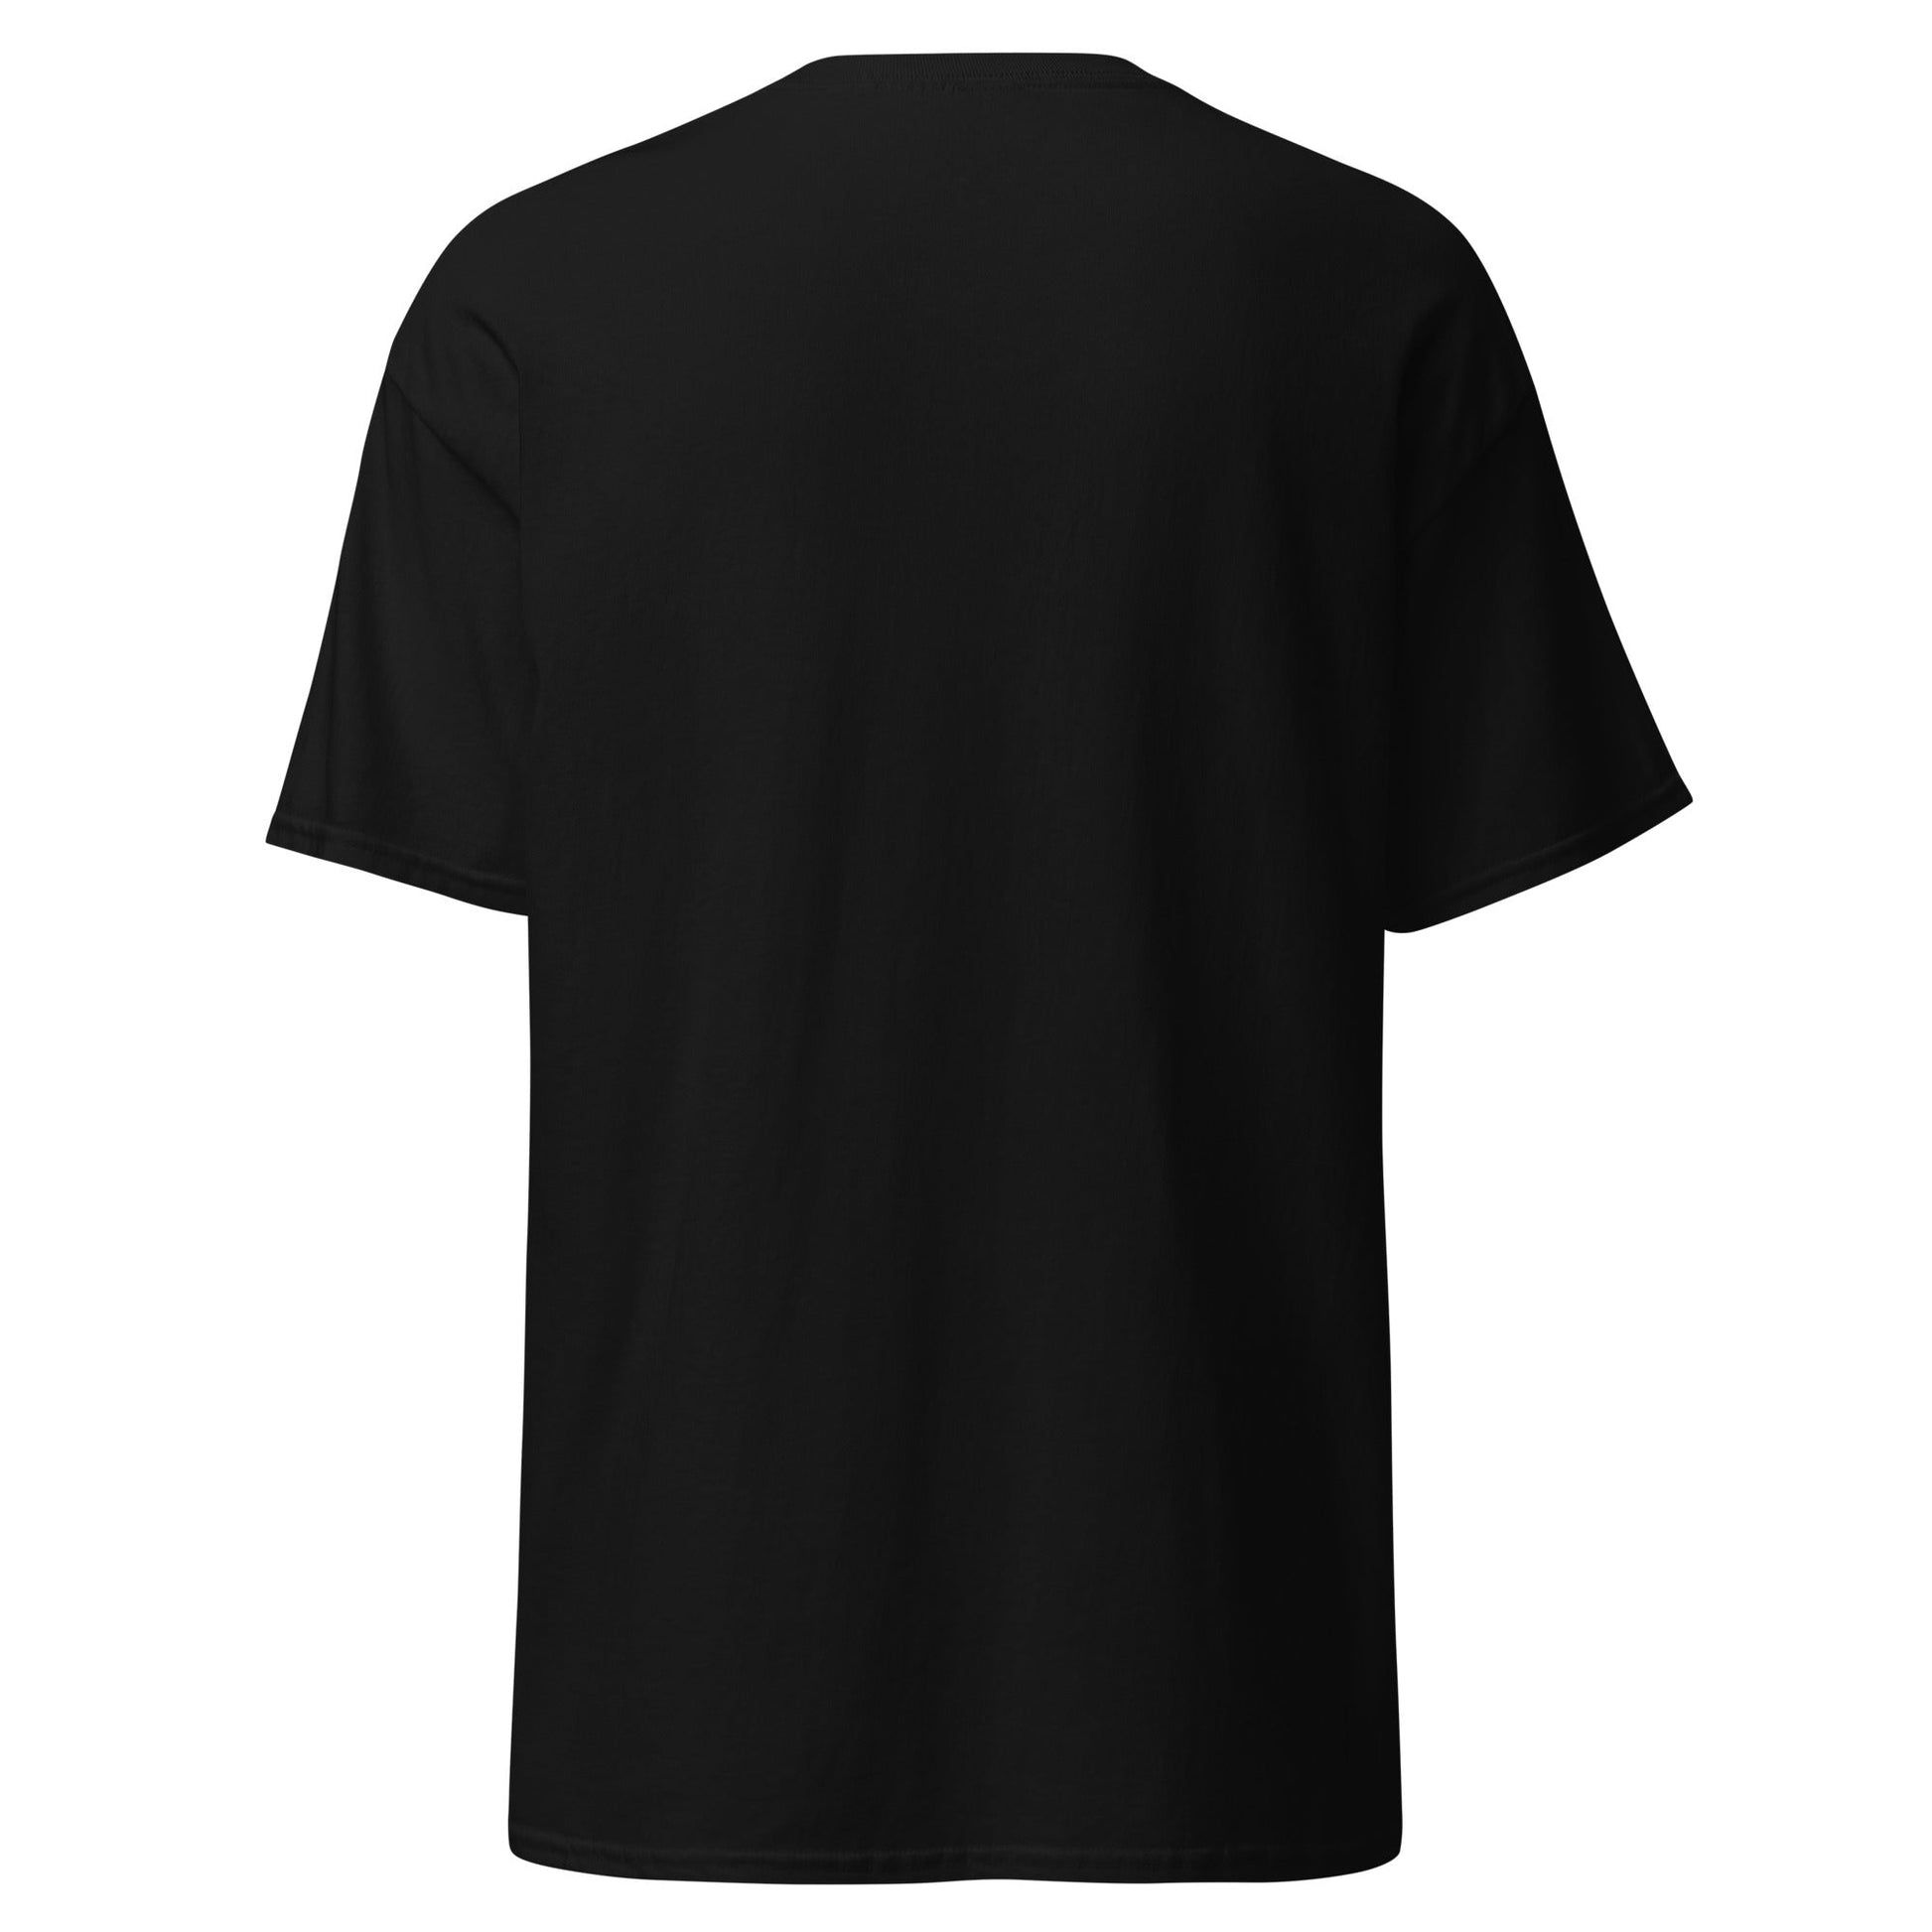 Camiseta Negra de Modal paquete de 3 , una prenda de elegancia y comodidad en color blanco. Ideal para cualquier ocasión. envíos a Guatemala